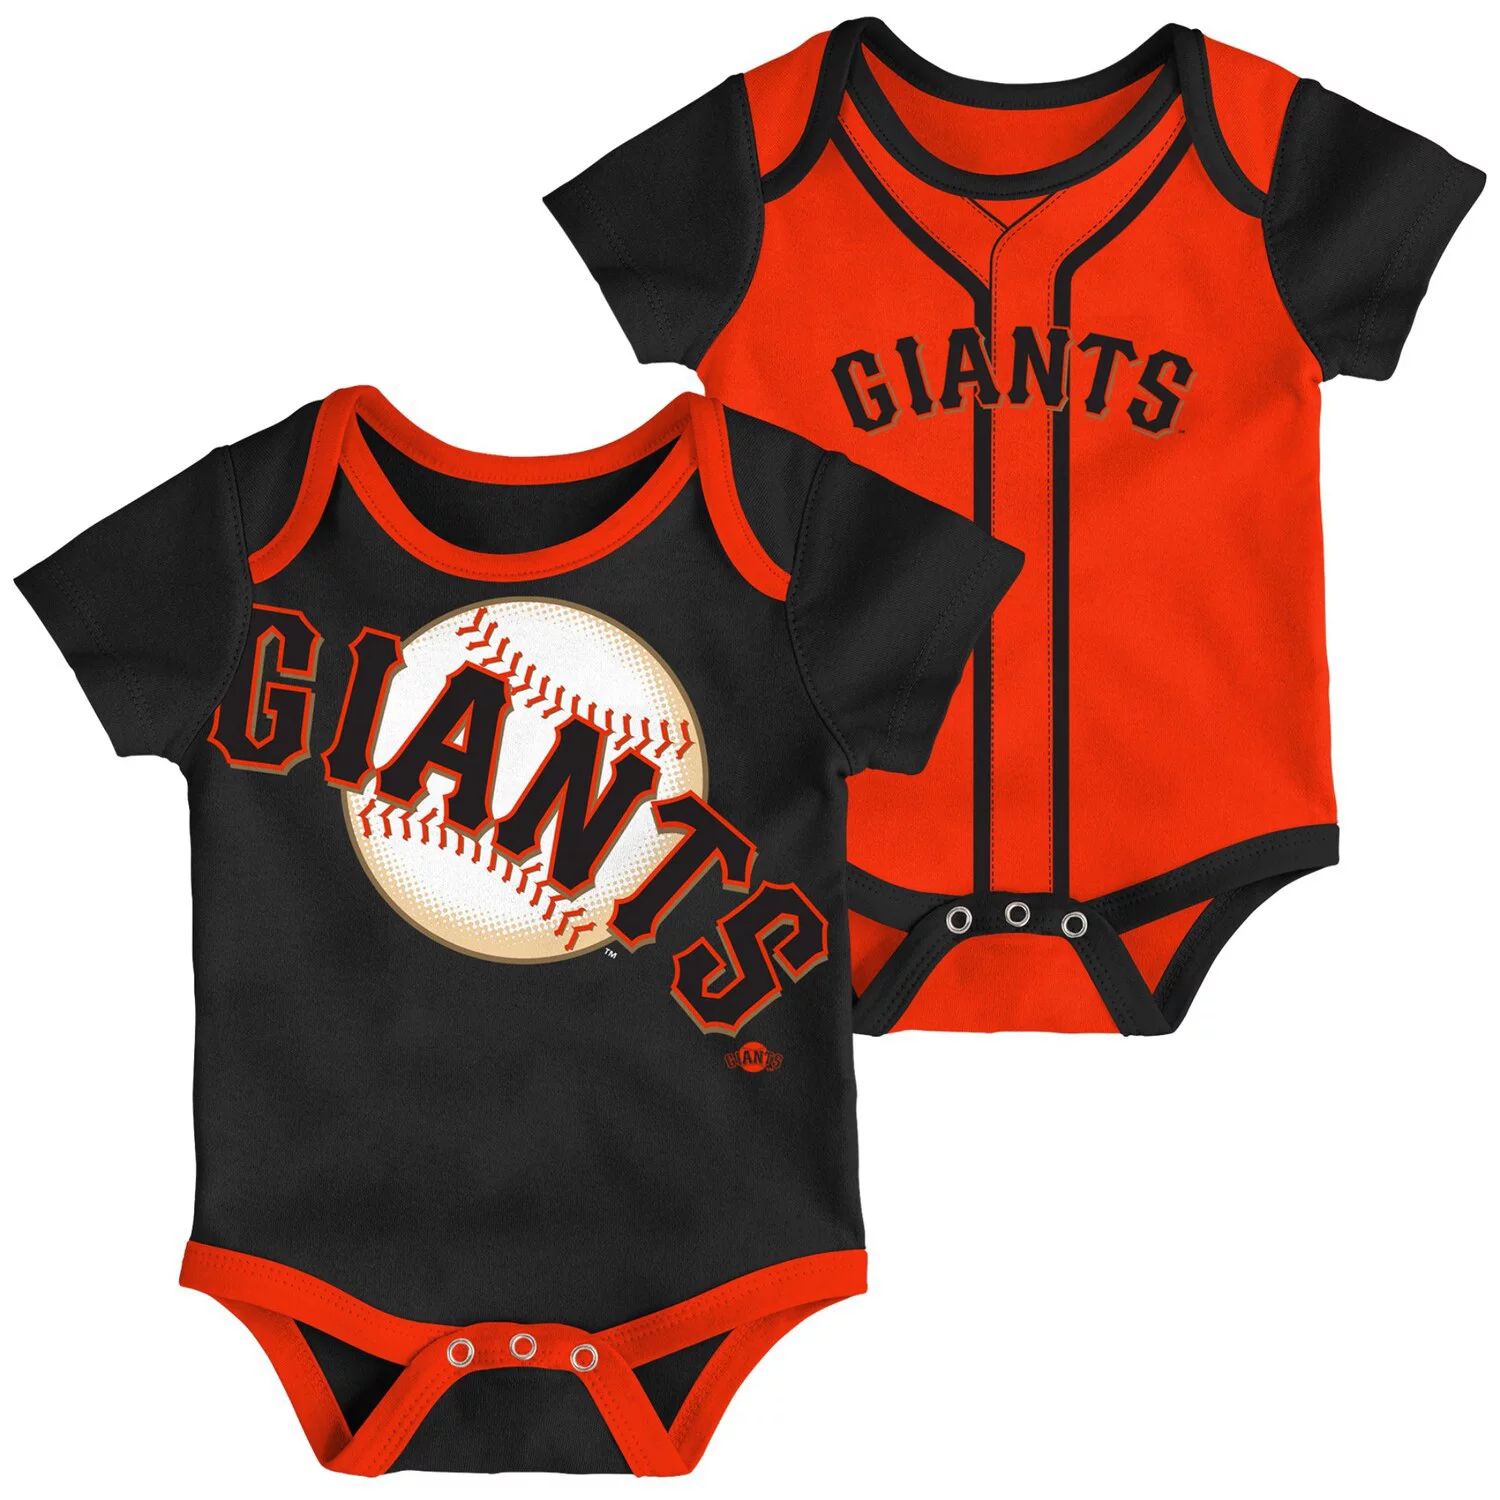 цена Комплект из 2 двойных боди для младенцев черного/оранжевого цвета San Francisco Giants Outerstuff